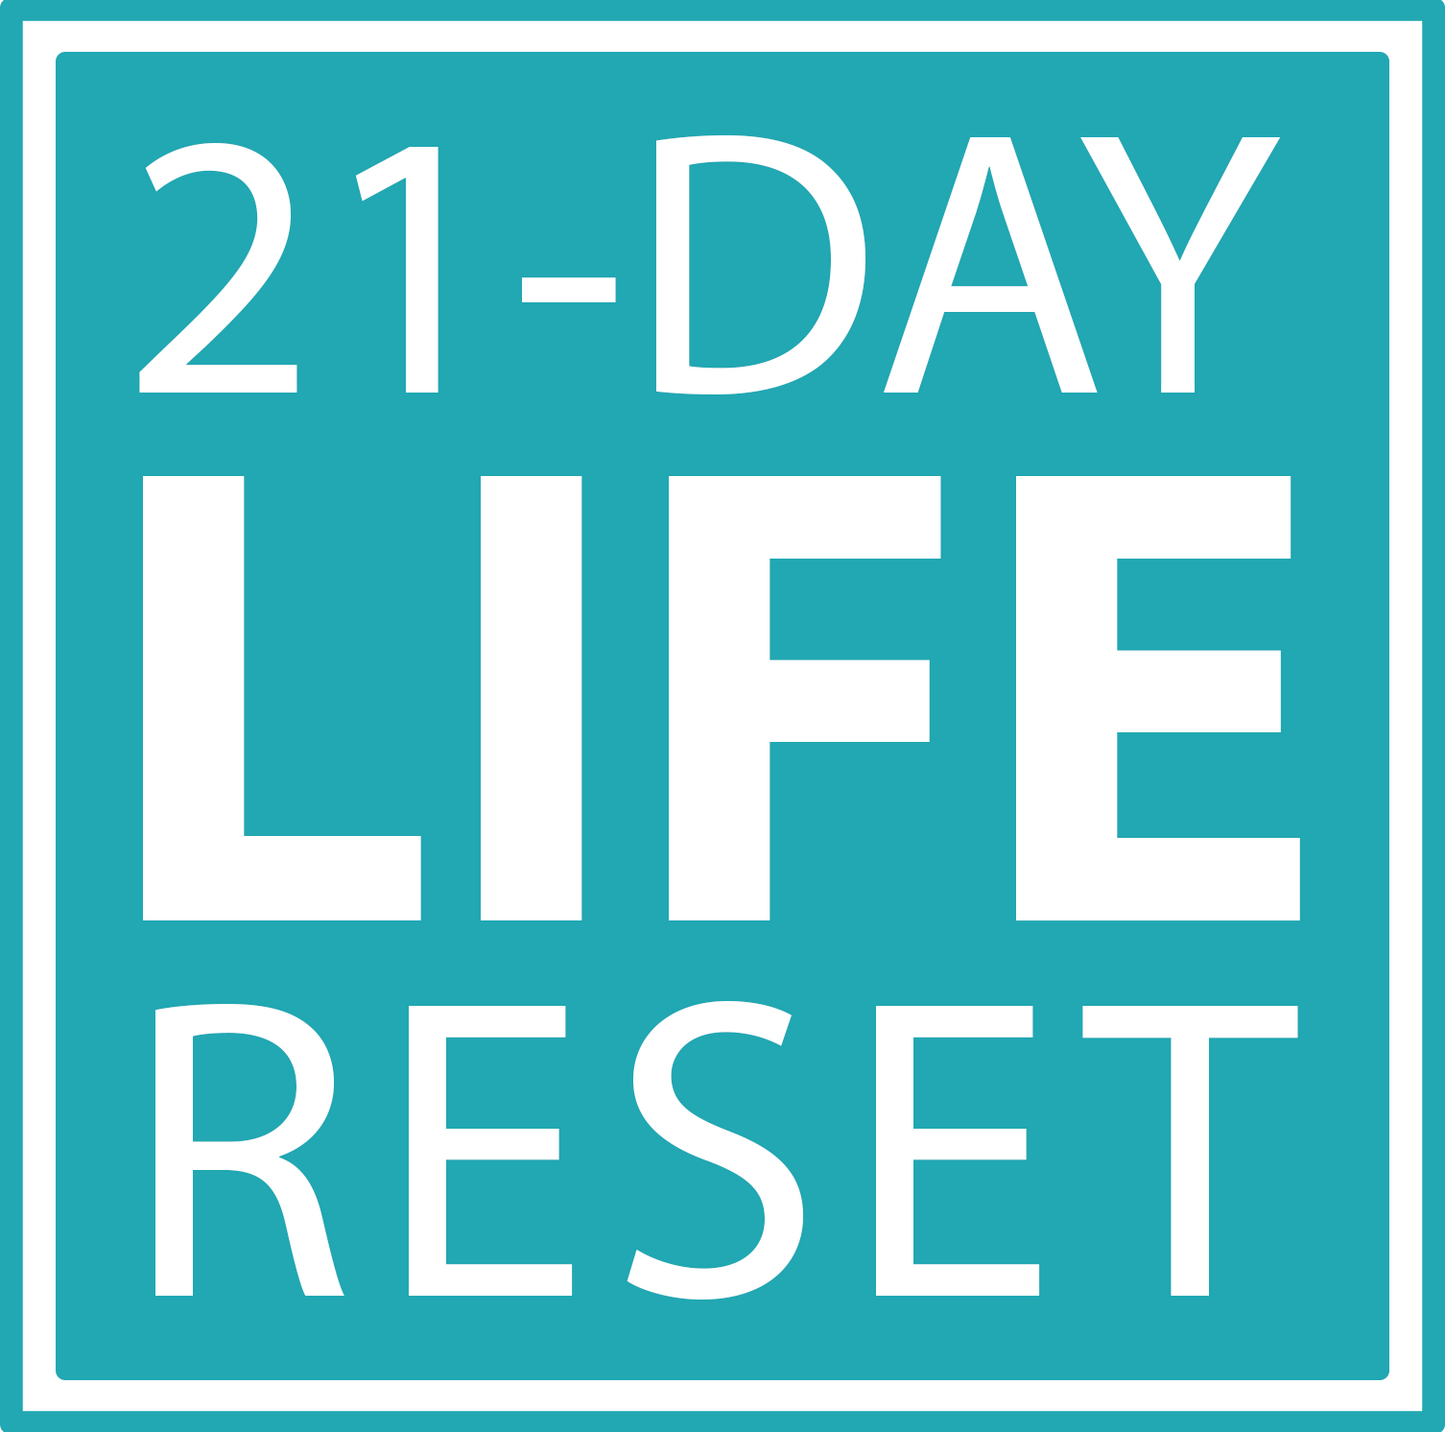 21 Day Reset